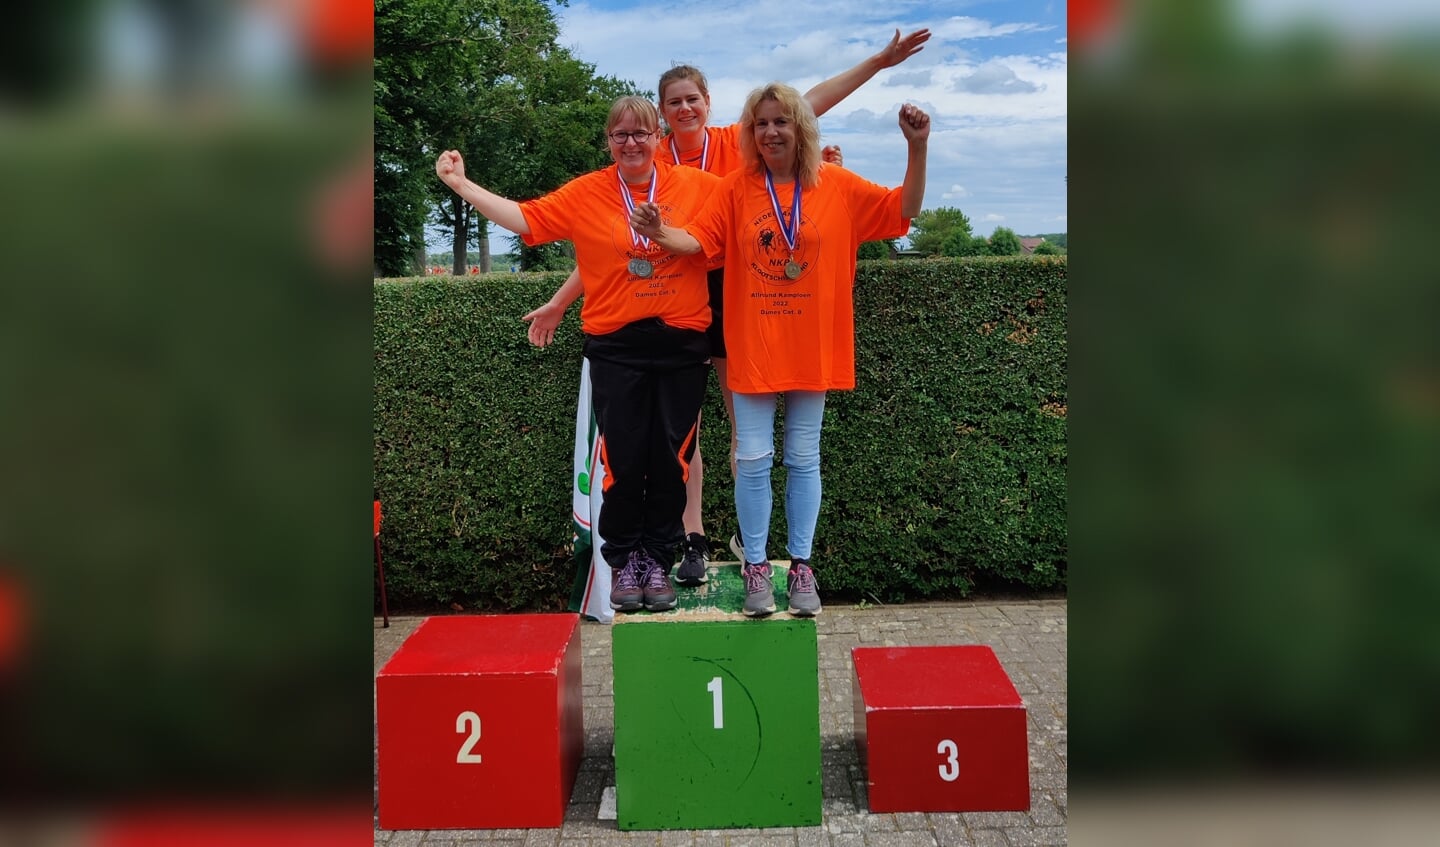 De allround klootschietkampioenen uit de Achterhoek (v.l.n.r.) Sabine Grotenhuis, Suzan Zieverink en Marga Overgoor. Foto PR